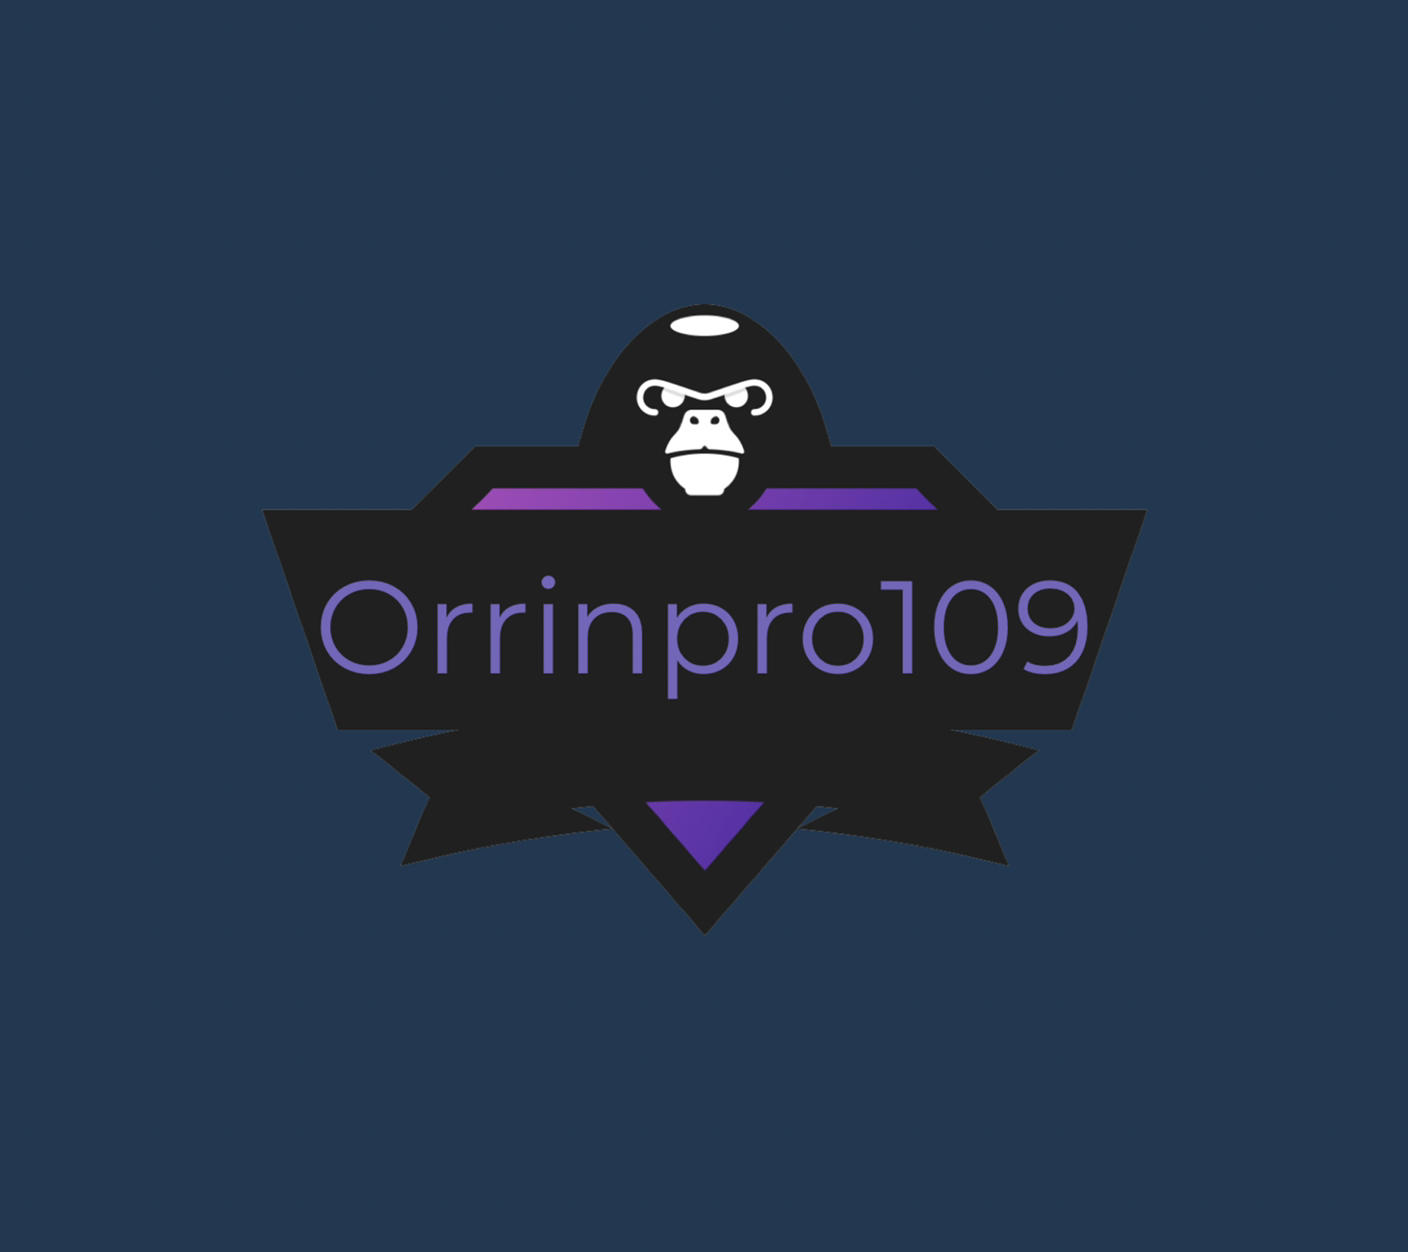 Orrinpro109YT